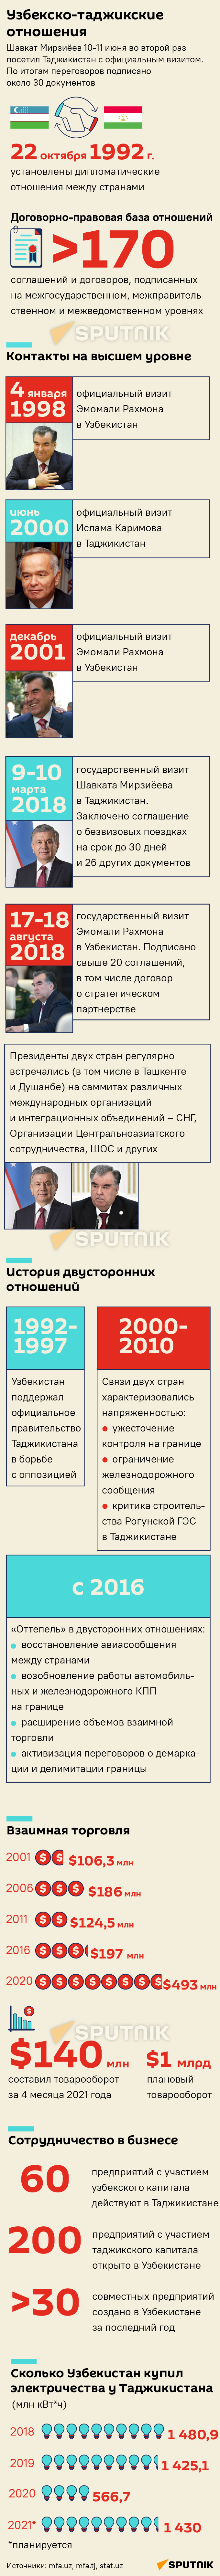 Узбекско-таджикские отношения - Sputnik Узбекистан